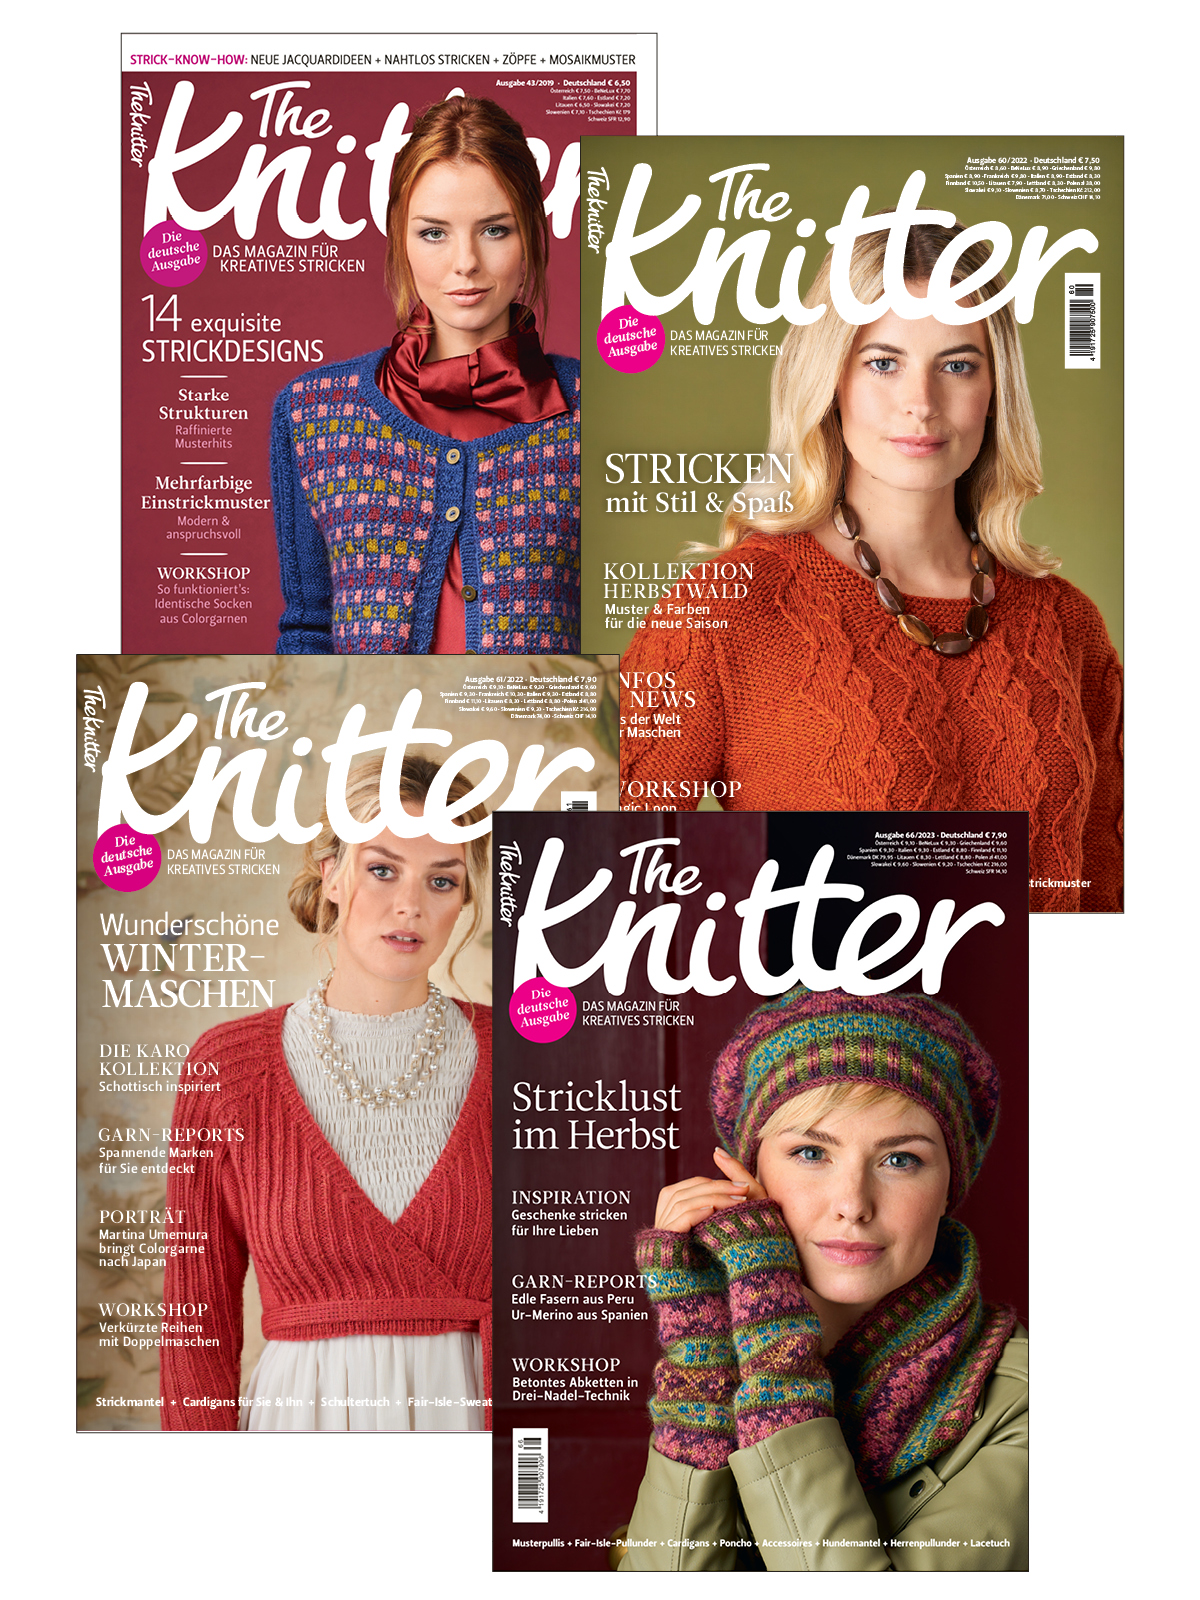 The Knitter Bundle: KIT 66/23 + KIT 60/22 + KIT 61/22 + KIT 43/19